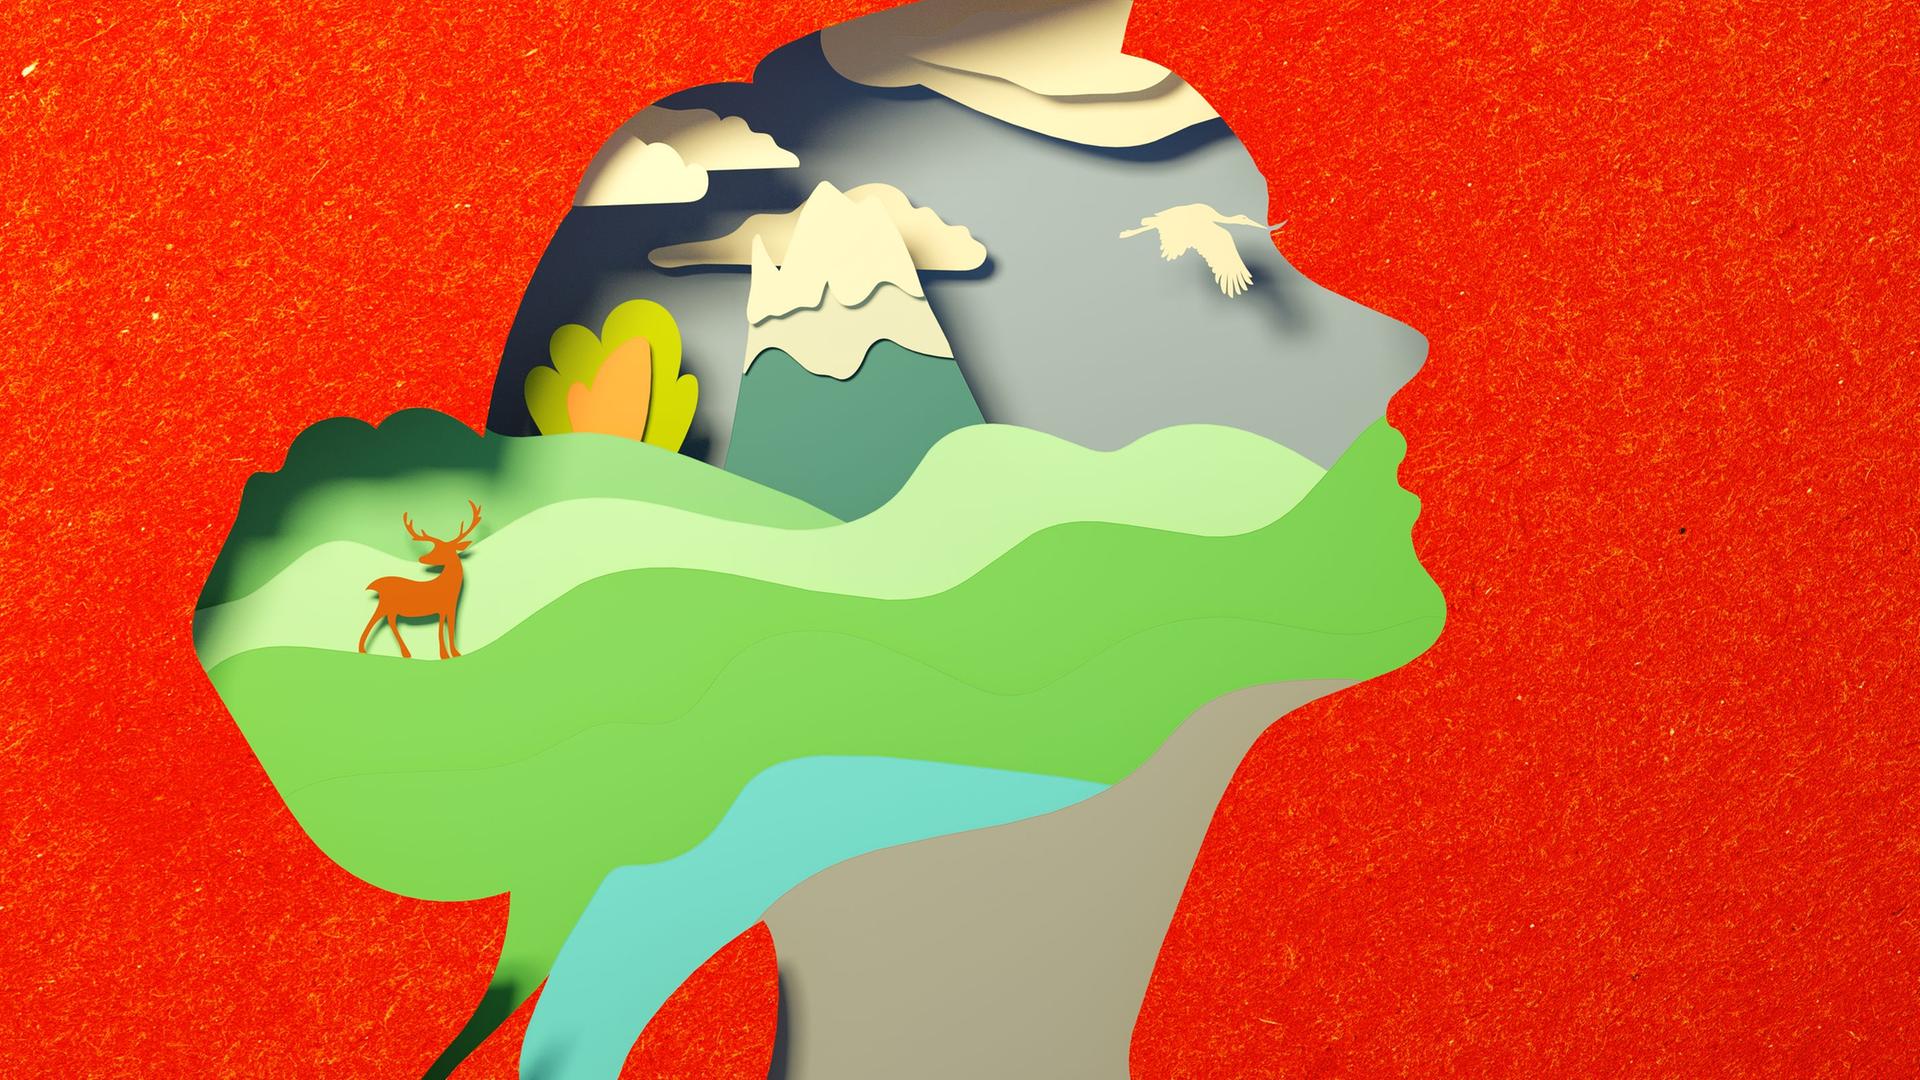 Farbiger Scherenschnitt vom Profil einer Frau, in deren Kopf eine Landschaft mit Bergen, Vogel und einem Reh zu sehen ist.